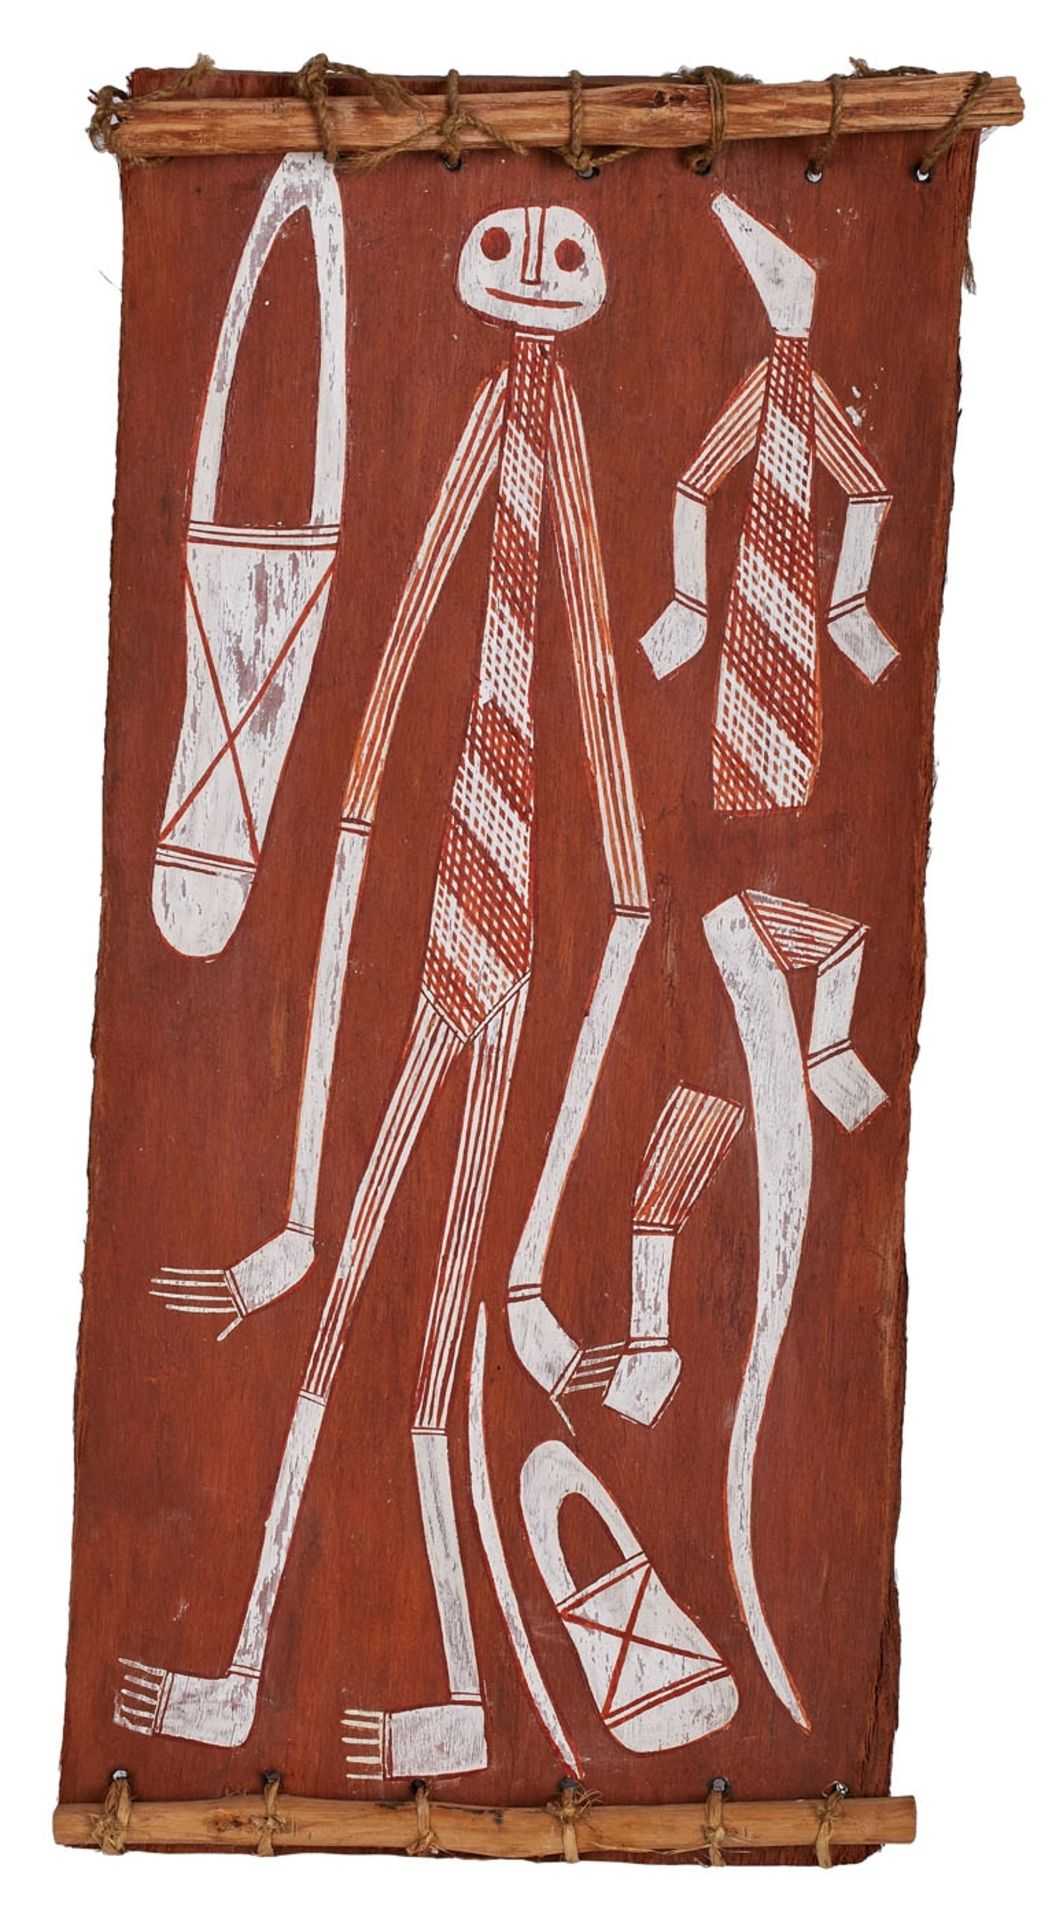 Malerei Thompson Ngaiumirrageb. 1954 "Wüstengeist" verso mit der Zuschreibung Tempera/Holz 42 x 20 x